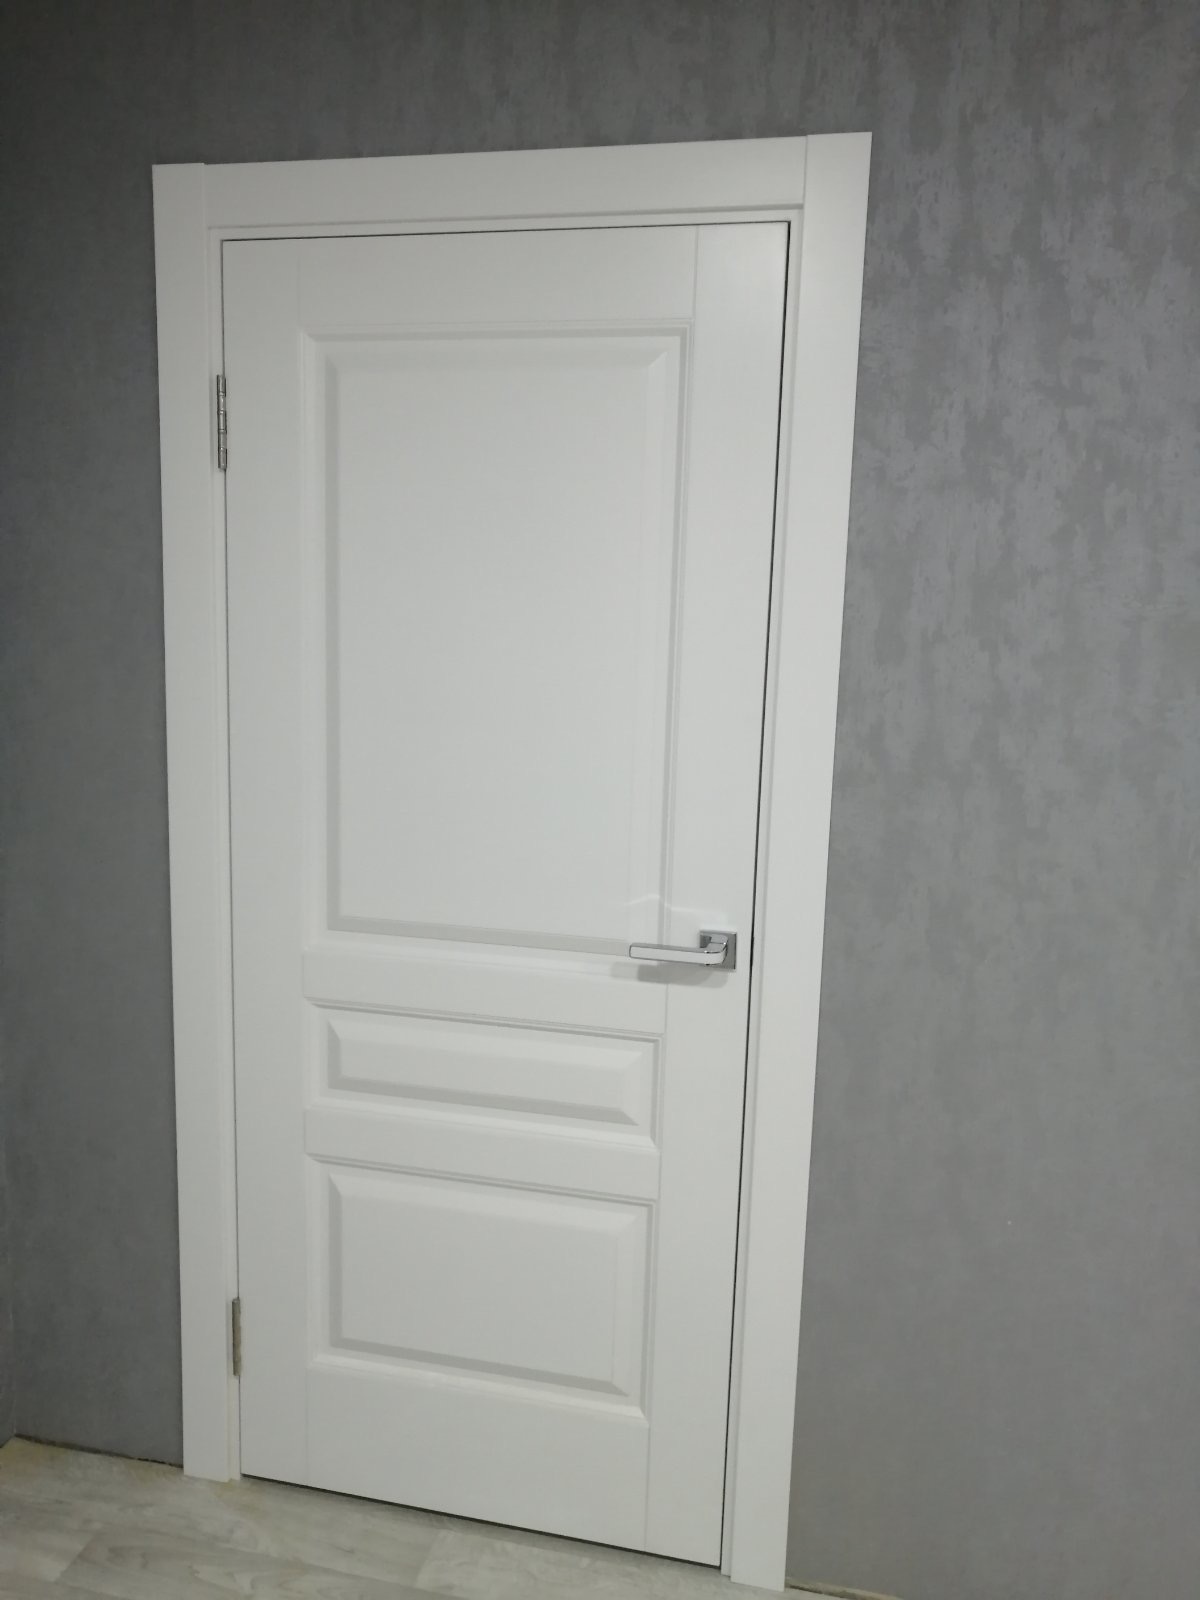 Двери массив сосны с отделкой Эмаль Финляндия. РБ. Цвет - Белый